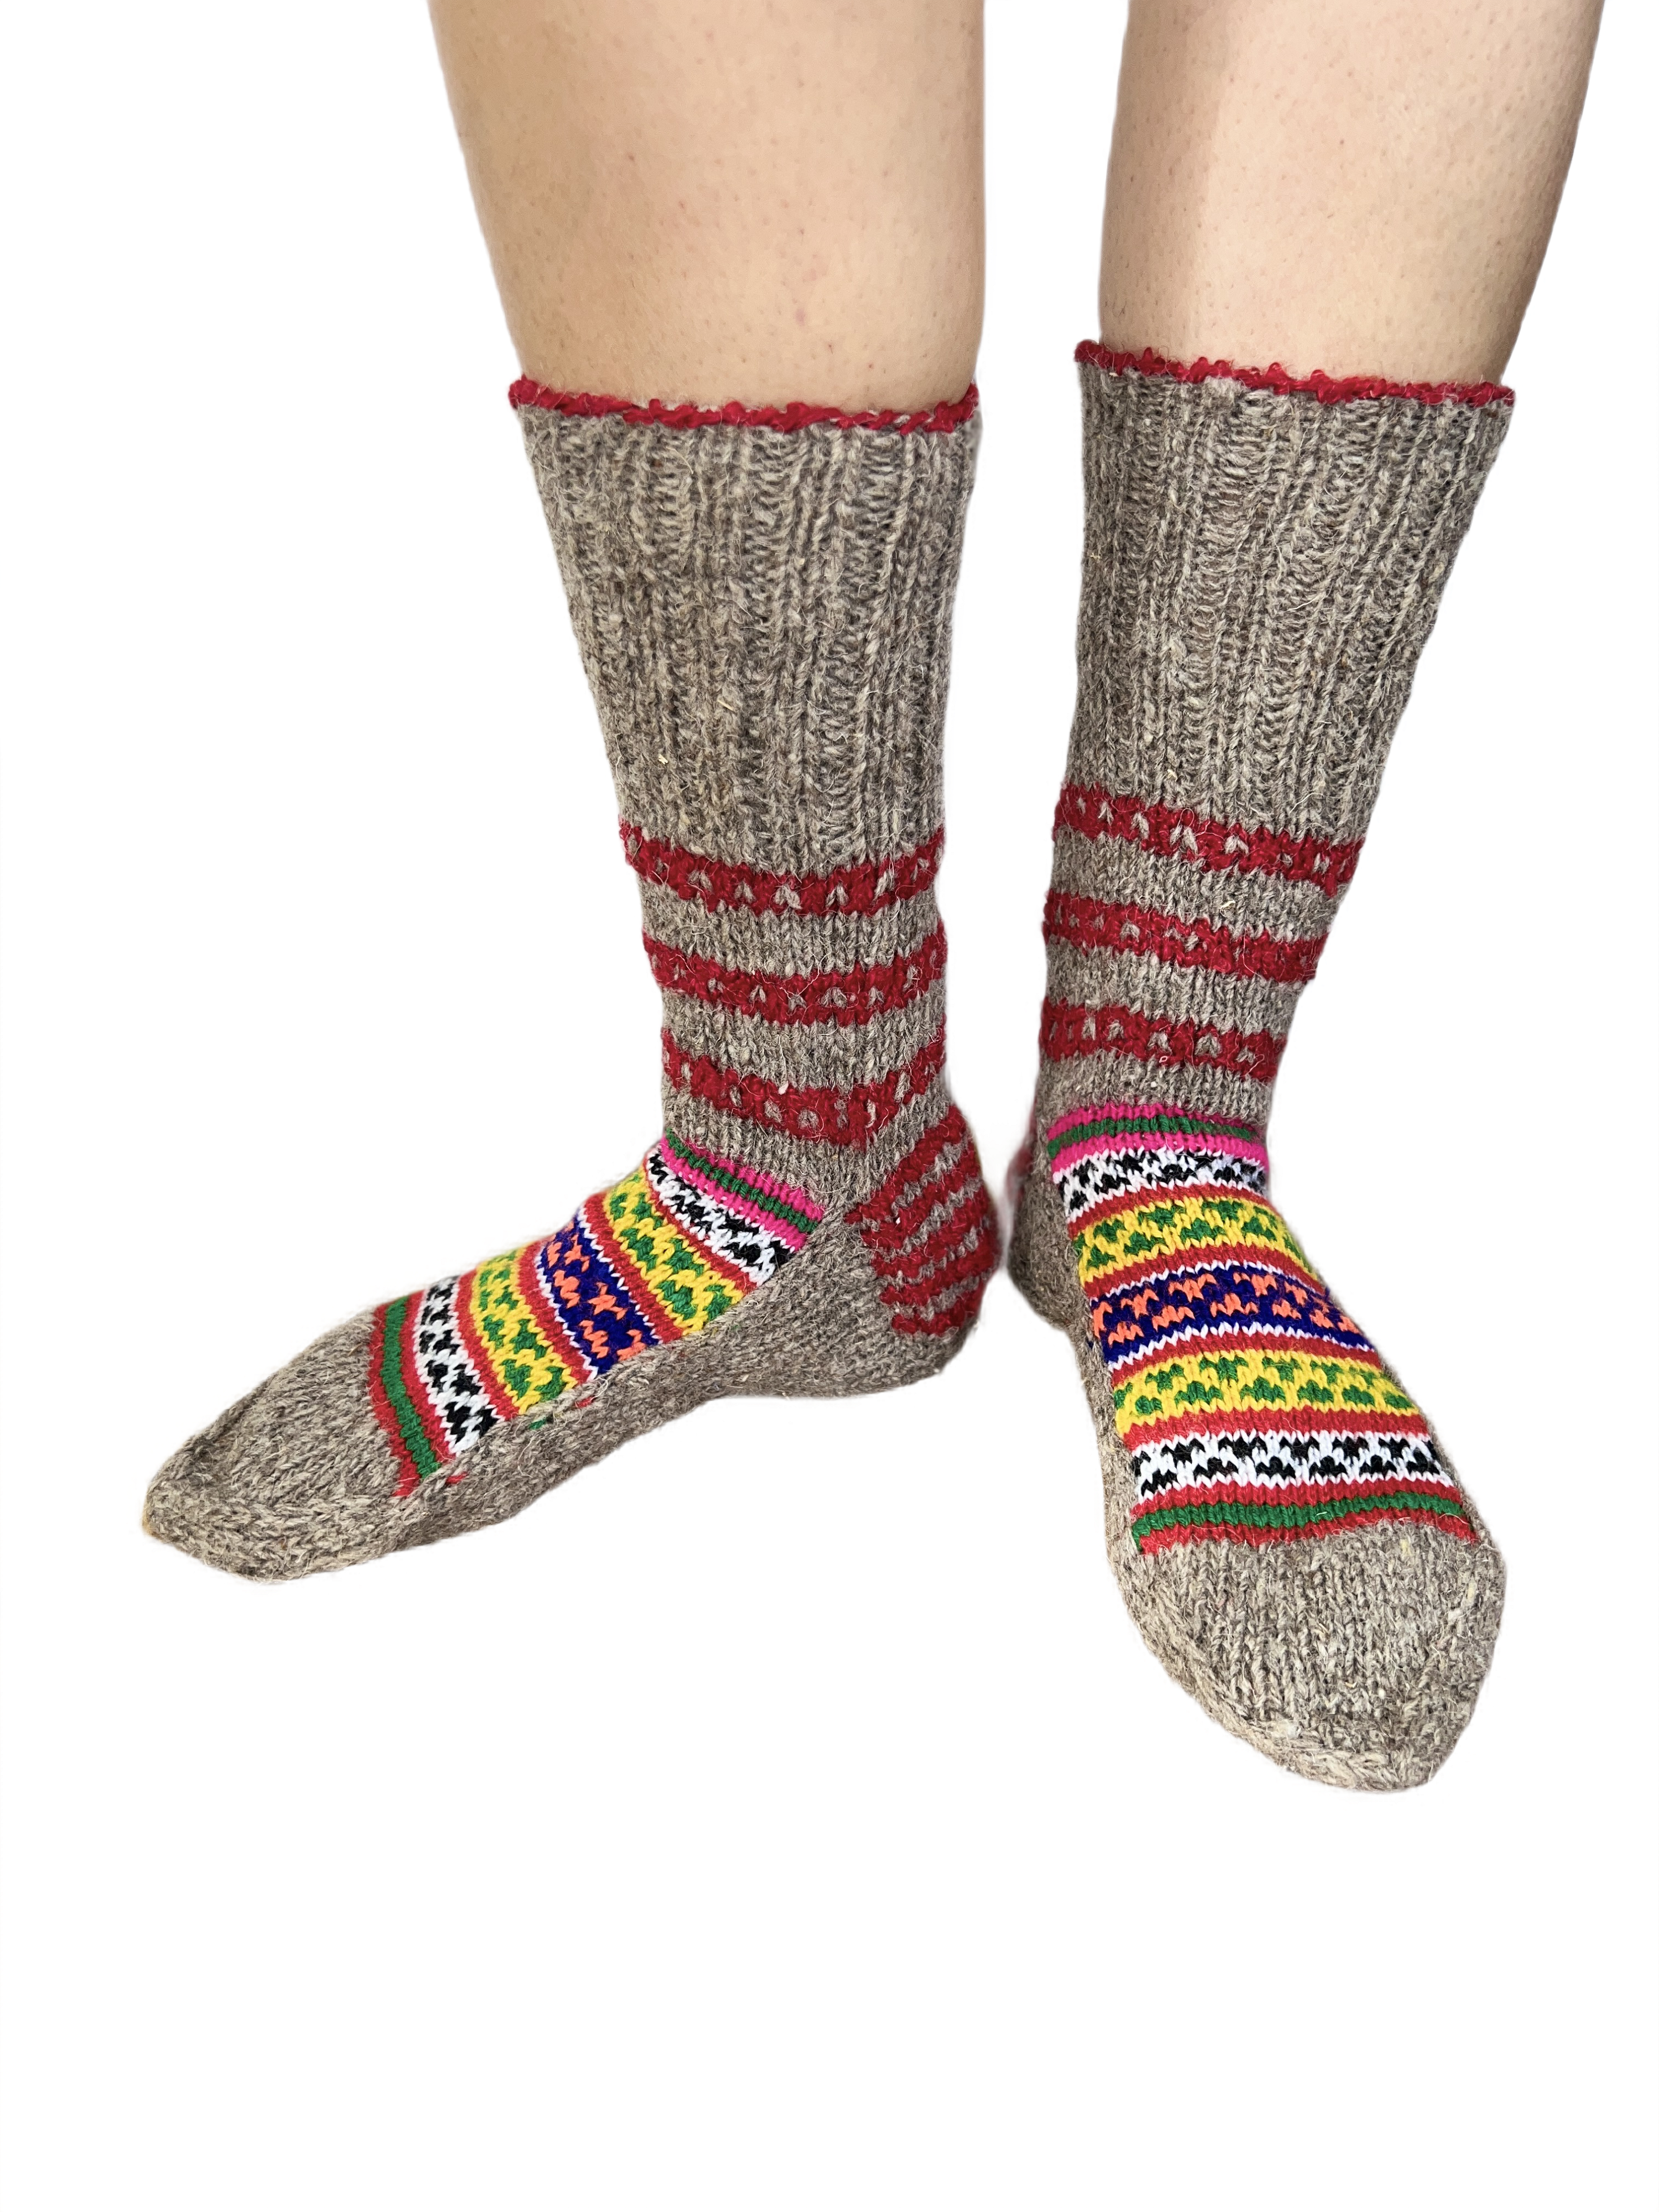 Slouch Pure Sheep Wool fuzzy Socks | Warm Leg Warmers |Cute Socks | Hand Knitted Winter Socks for women